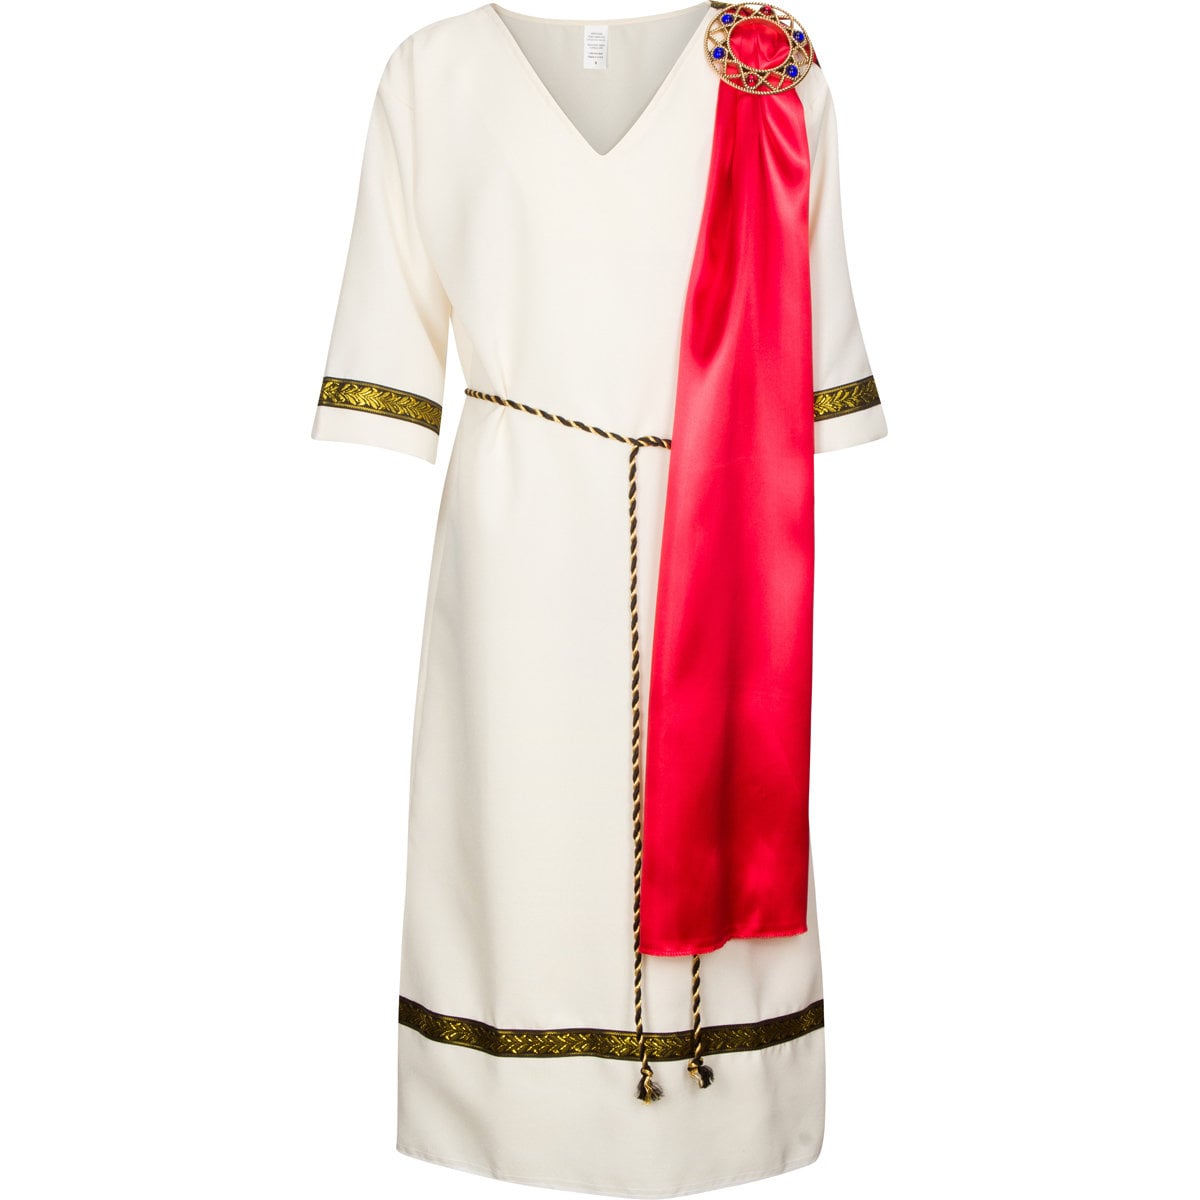 Roman/Ancient Grecian Tunic, Toga Costume